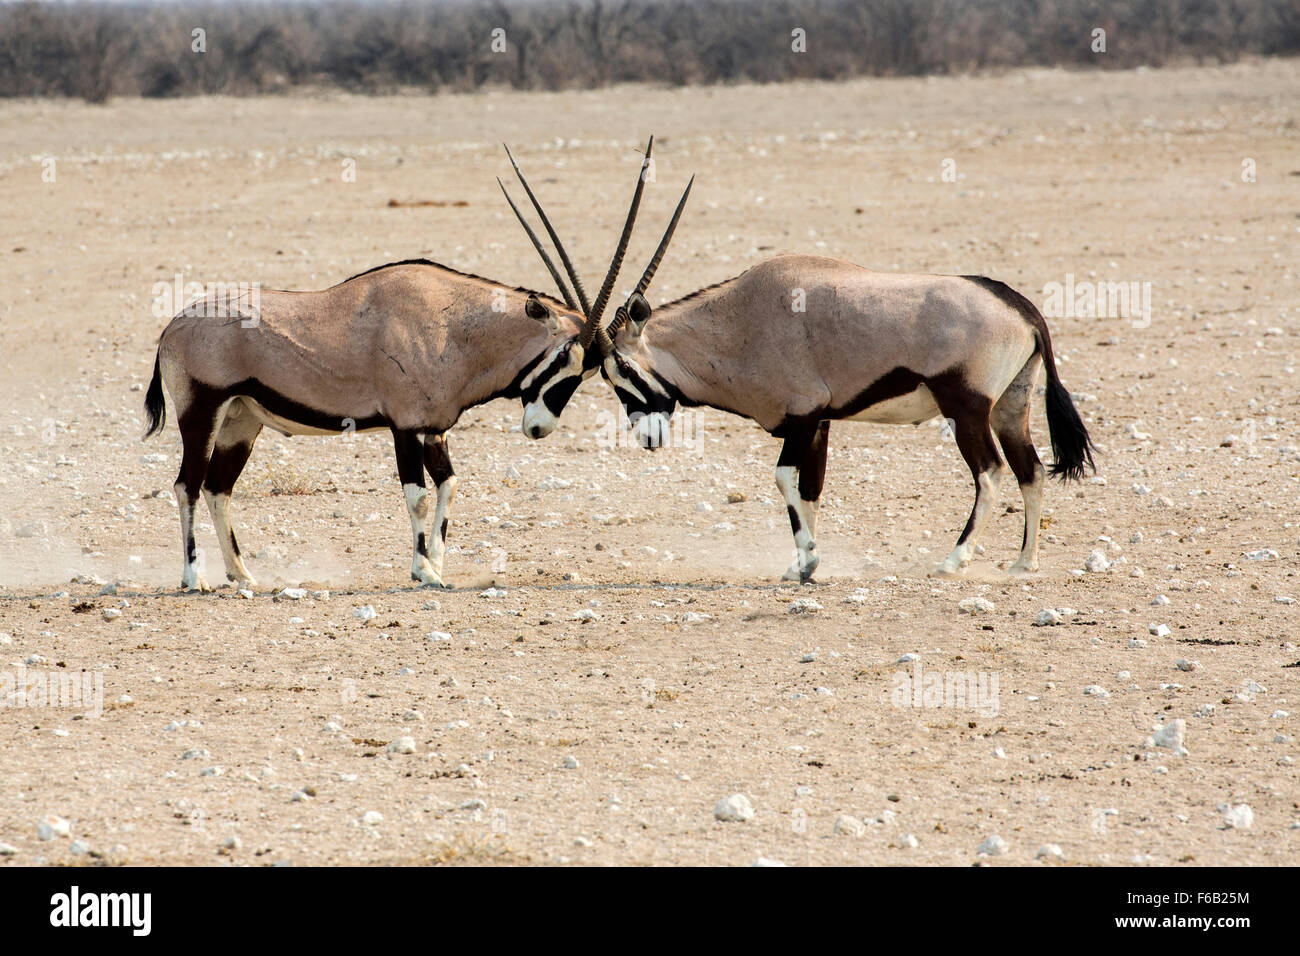 Oryx fighting in Etosha National Park, Namibia, Africa Stock Photo